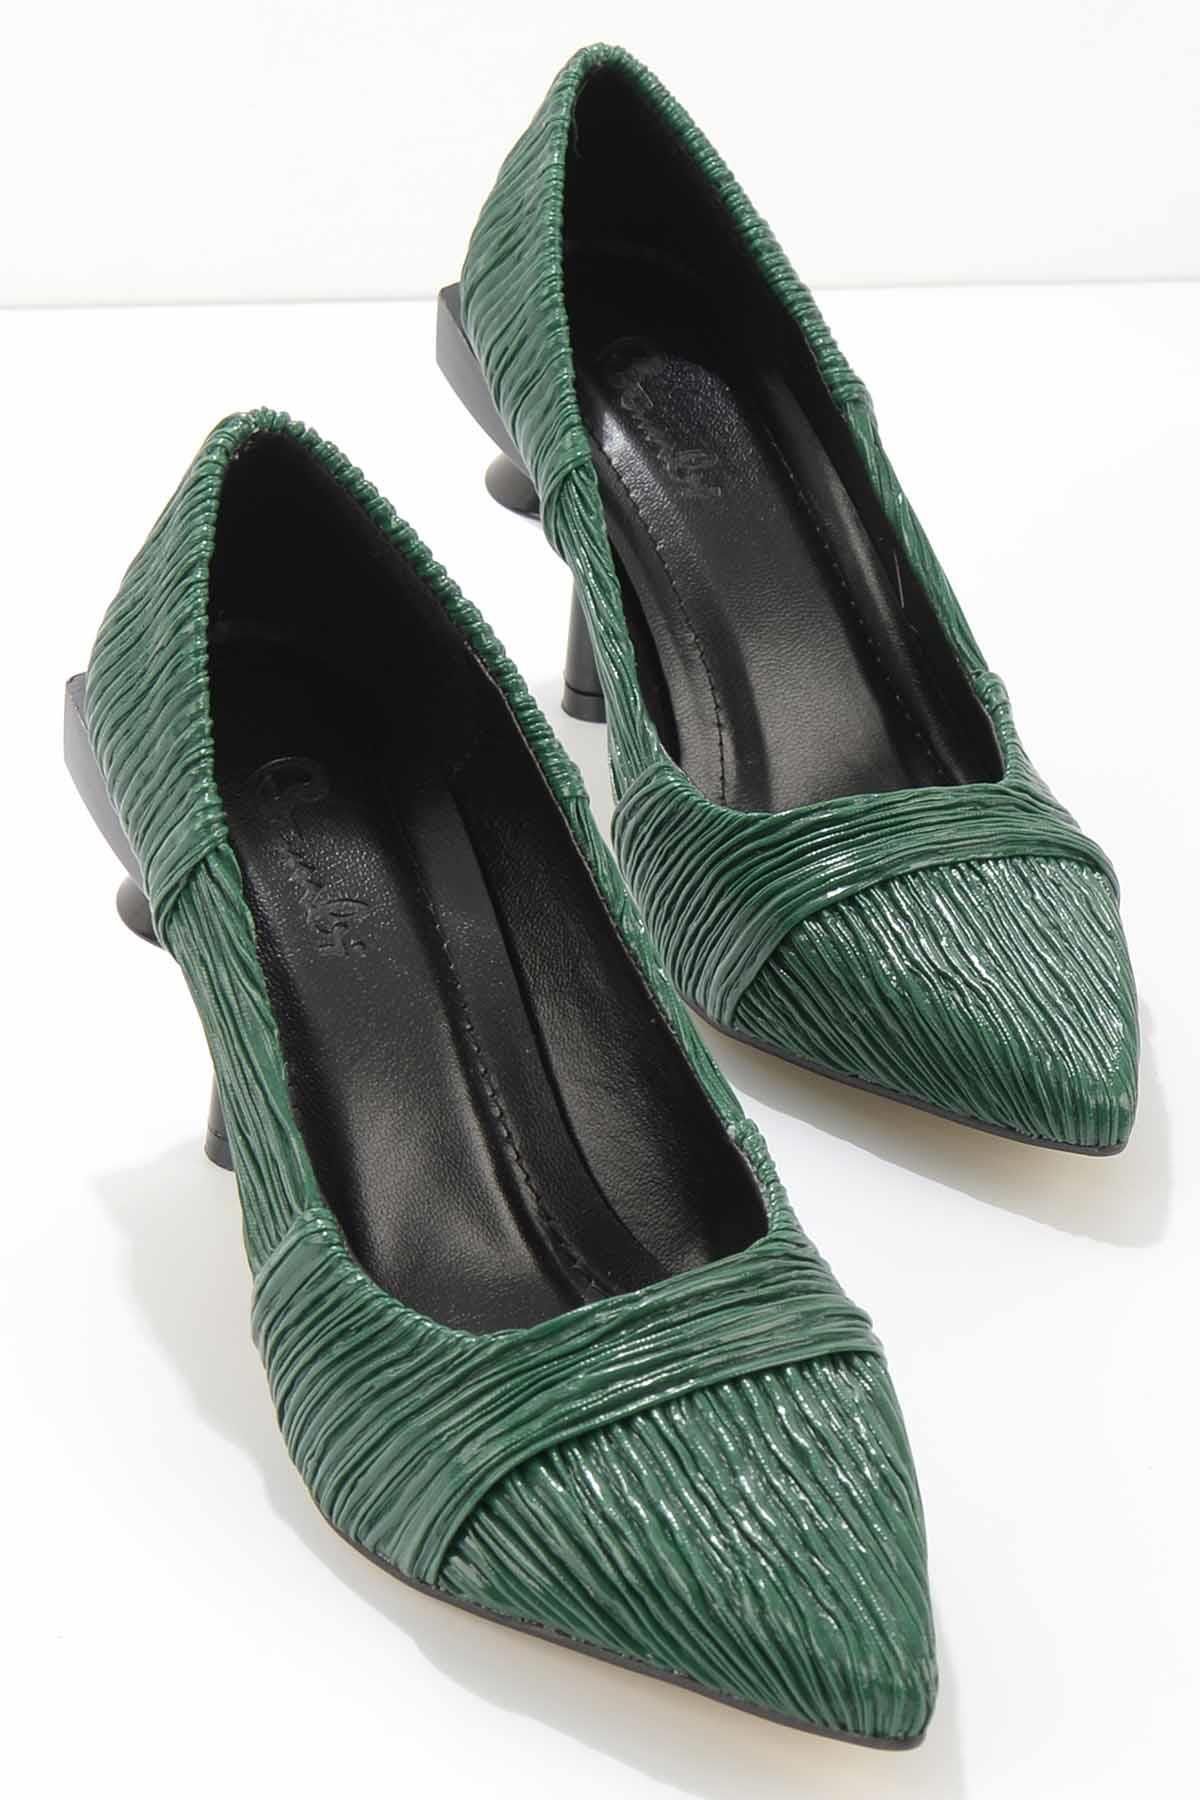 Bambi Yeşil Kırışık Kadın Klasik Topuklu Ayakkabı K01188125142